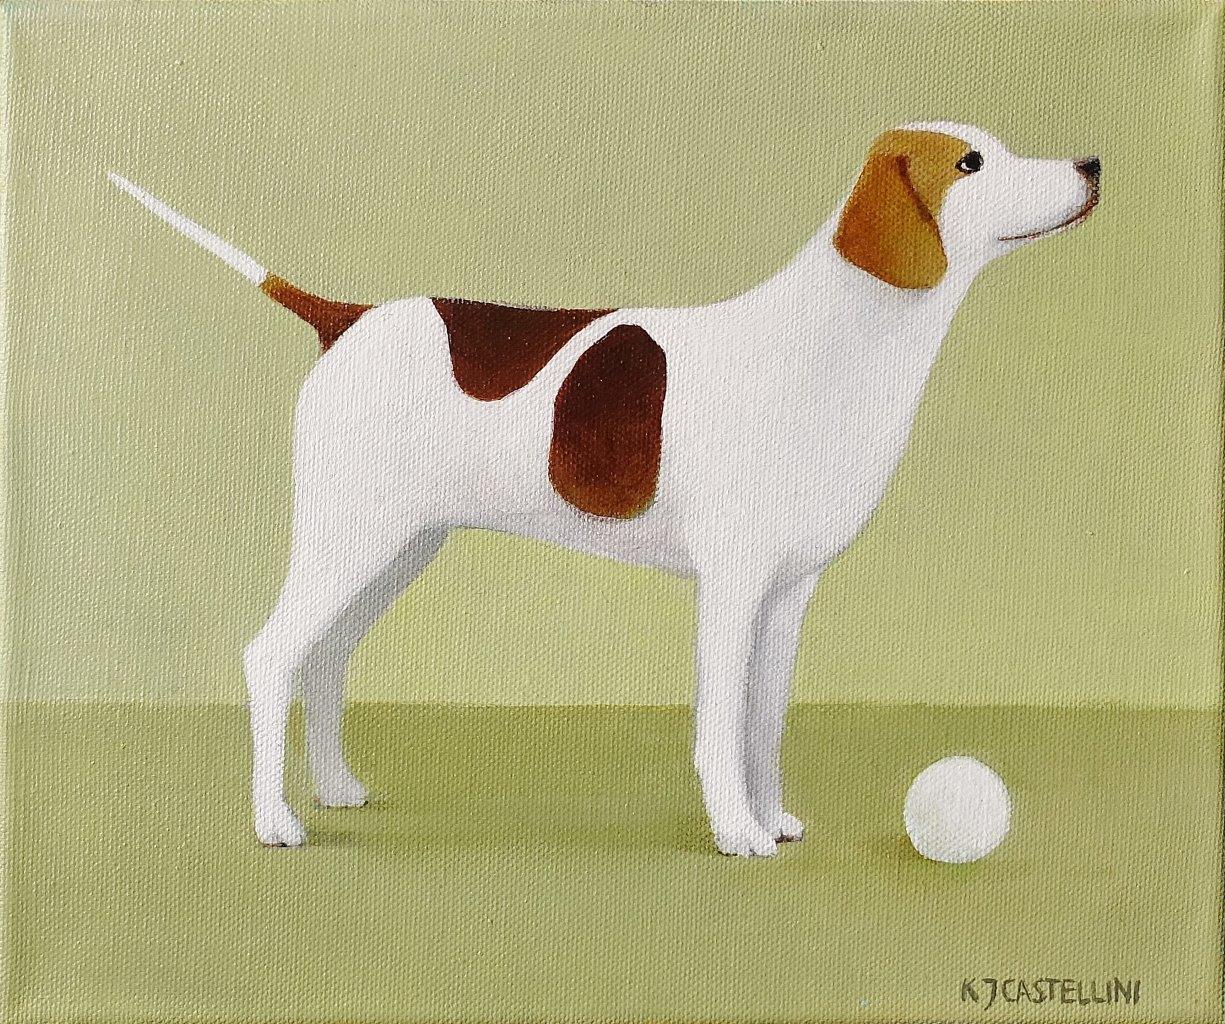 Katarzyna Castellini - Dog with a ball (Oil on Canvas | Size: 35 x 29 cm | Price: 2600 PLN)